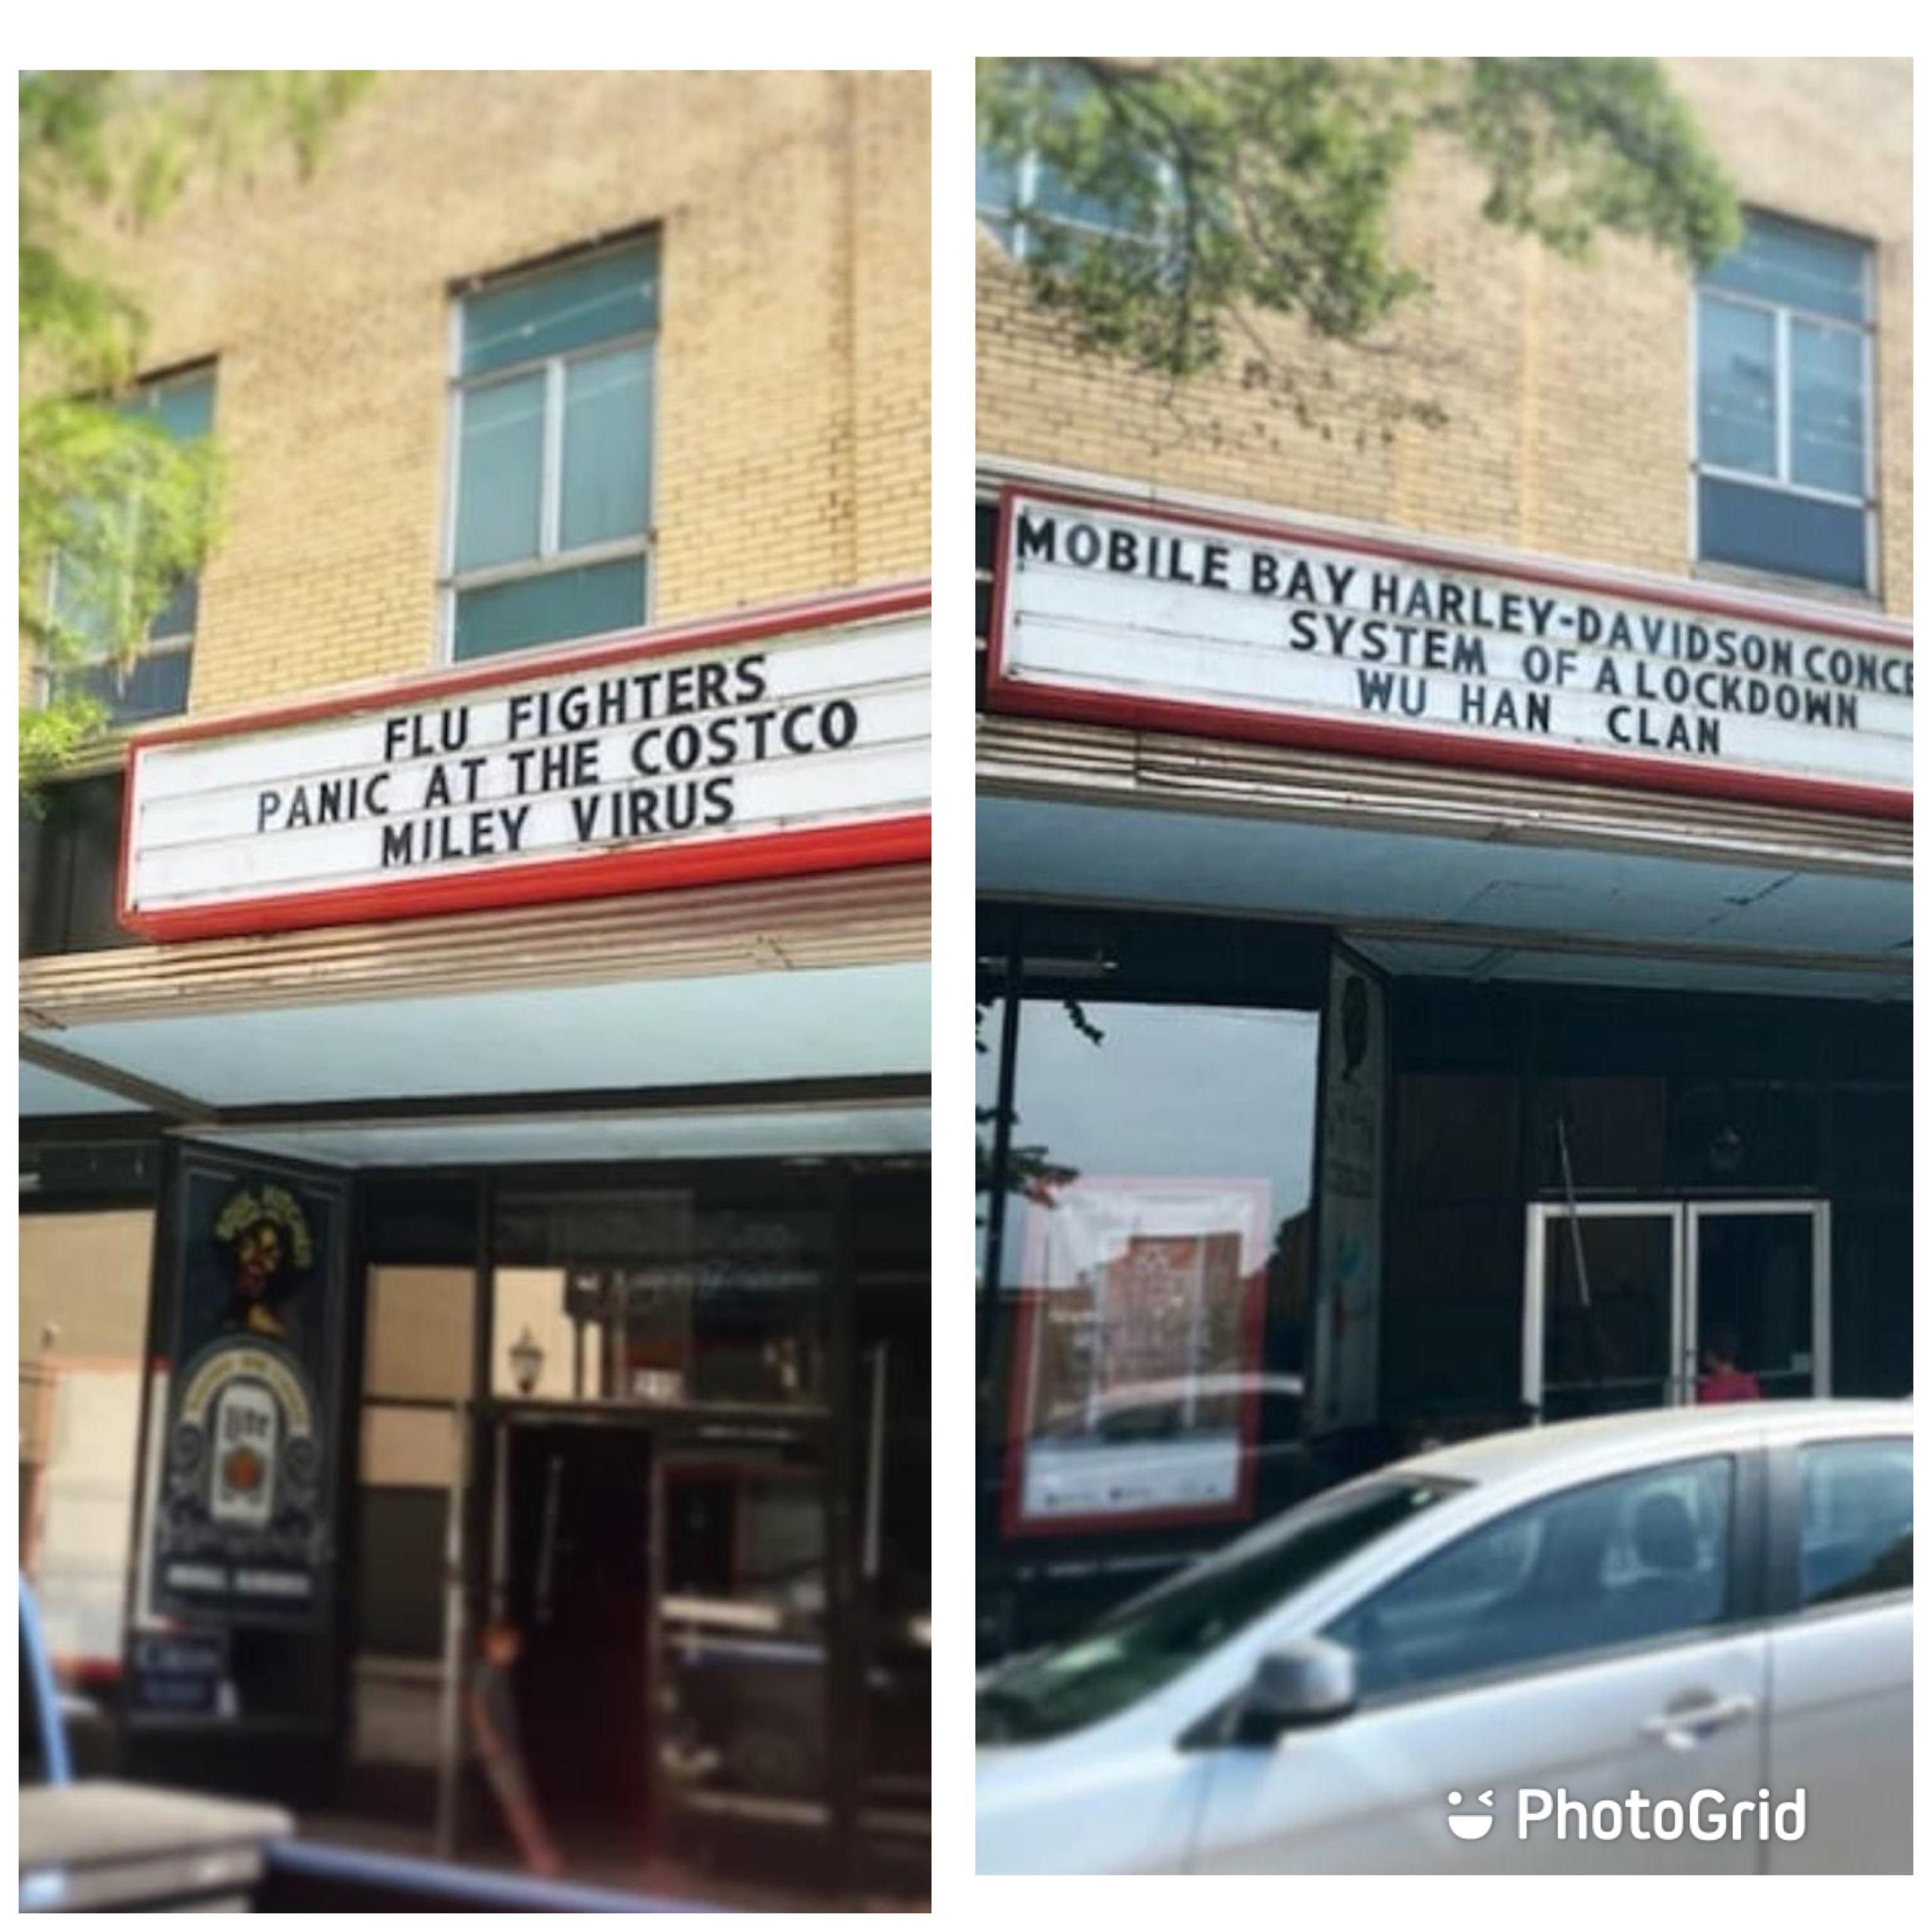 My hometown music venue has jokes despite the coronavirus closing